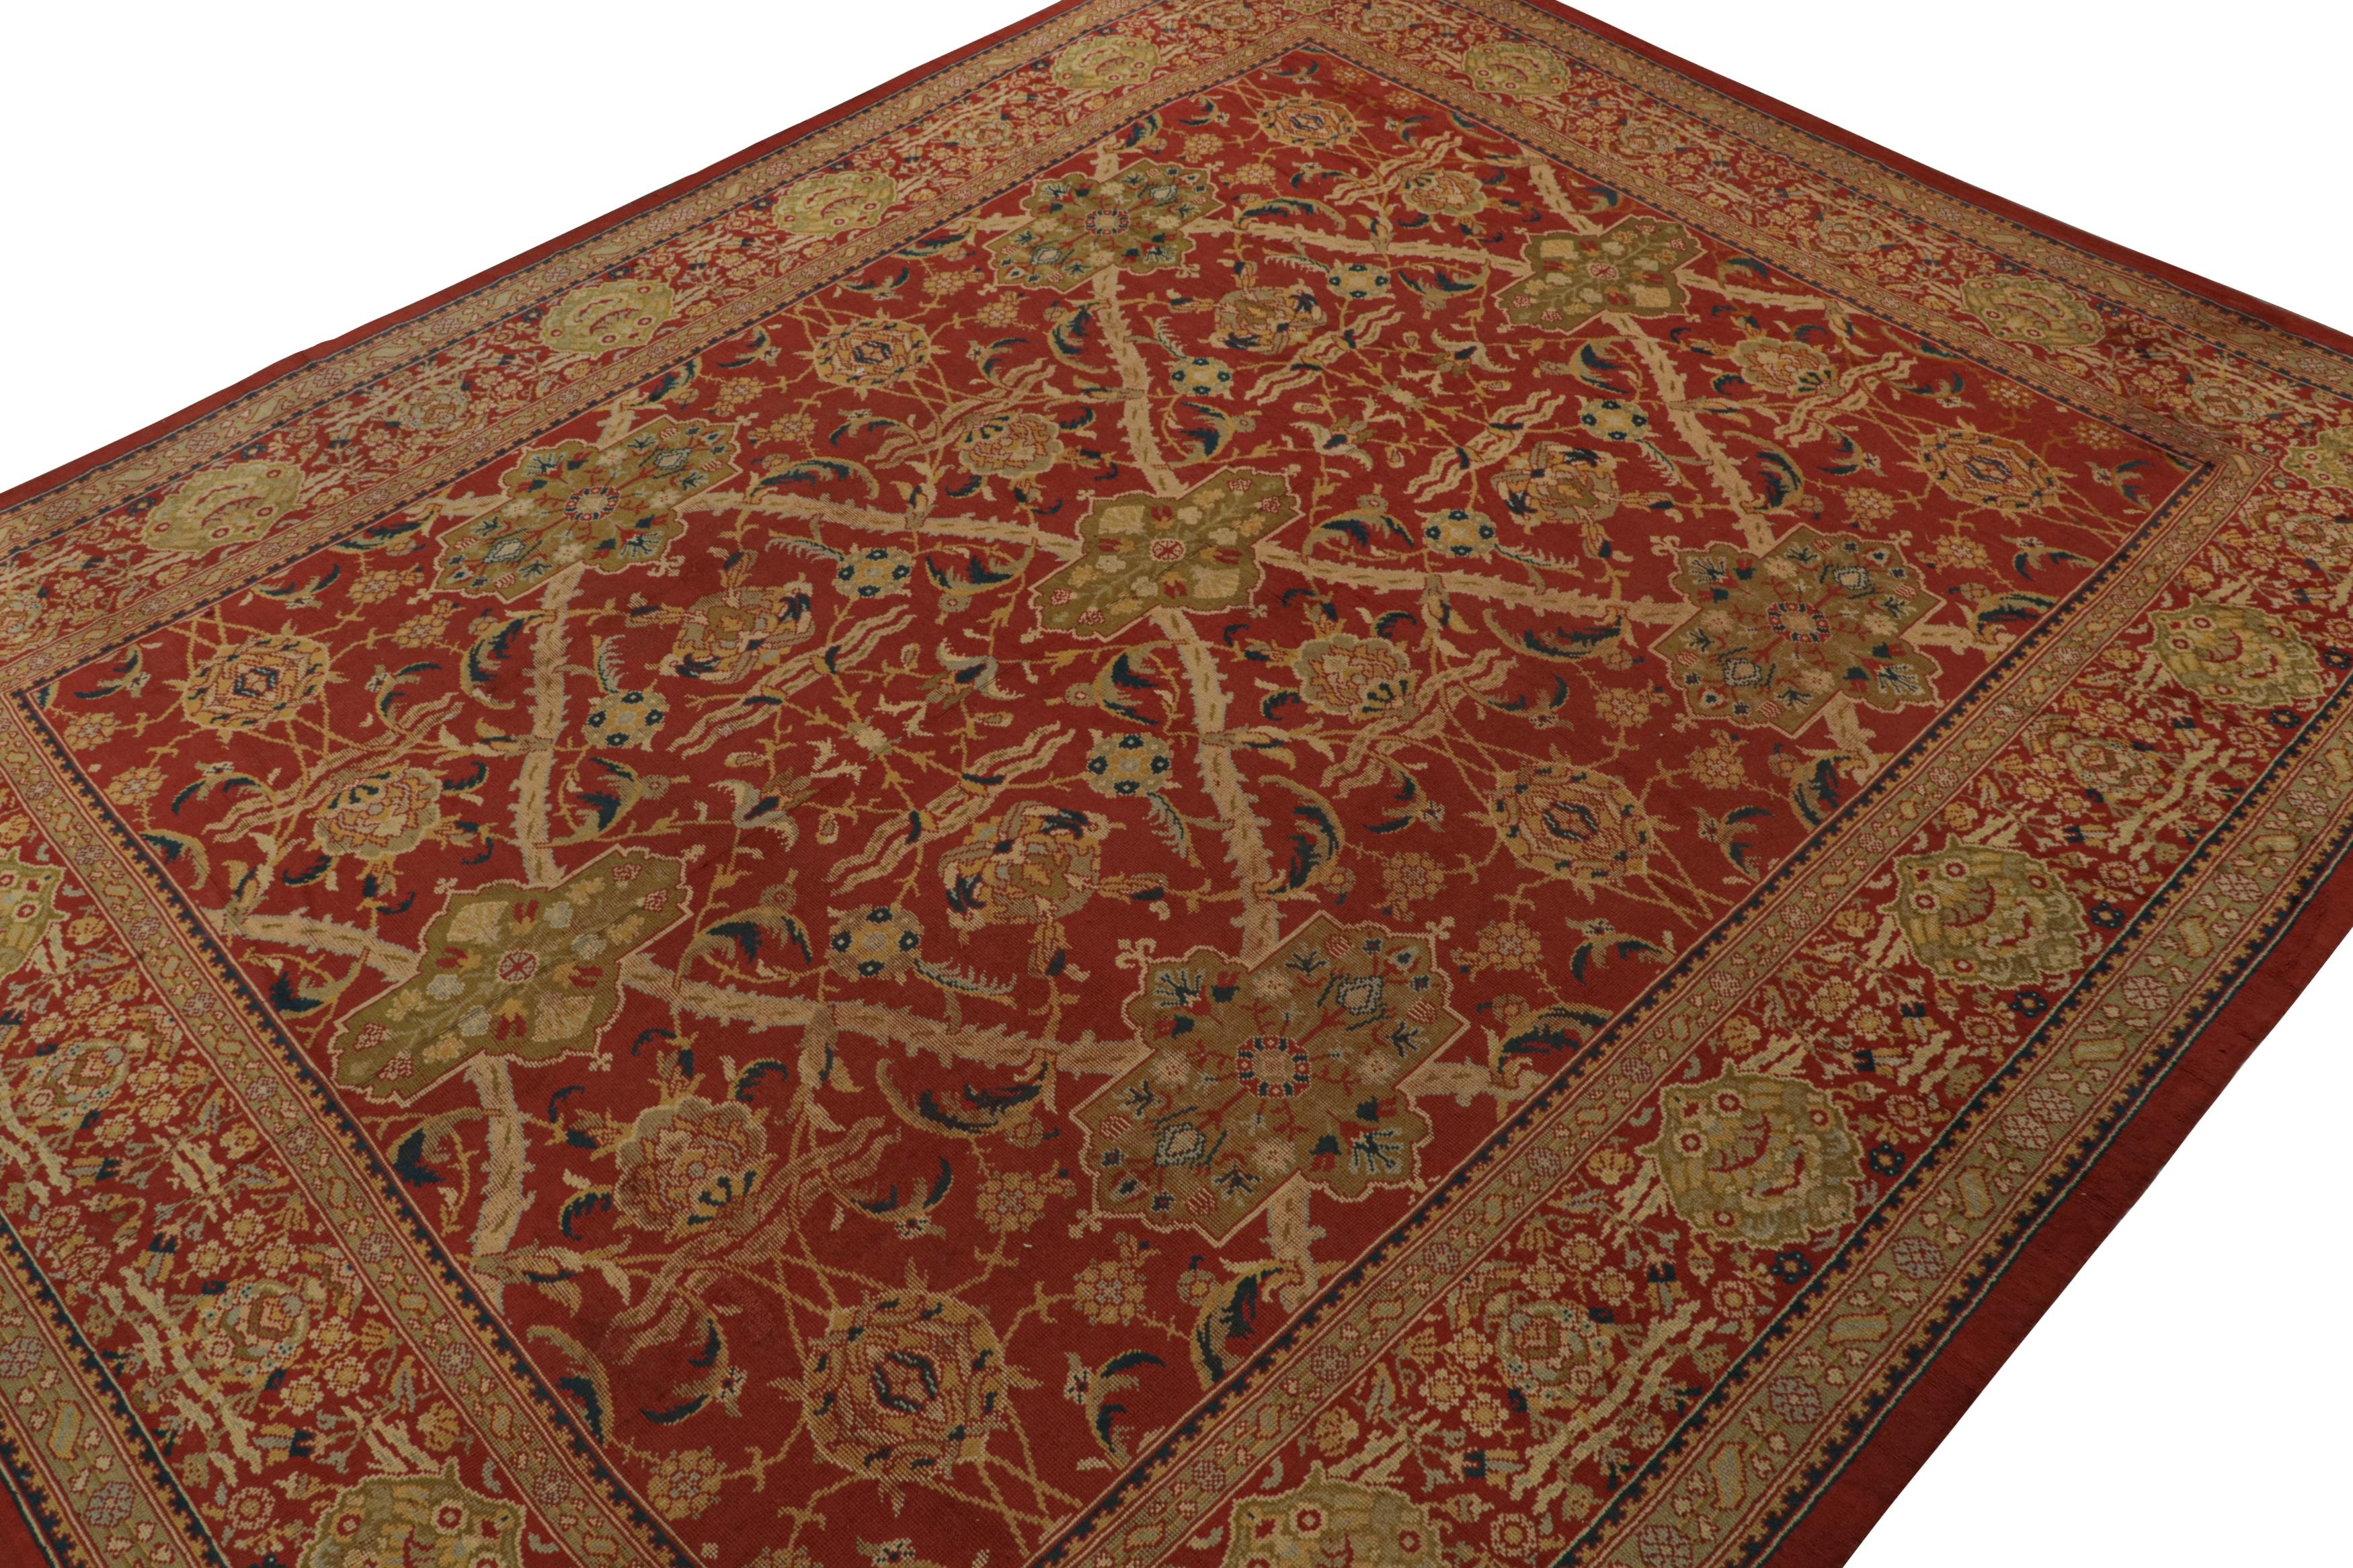 Noué à la main en laine vers 1860-1870, ce tapis Axminster antique de 14x17 provenant d'Angleterre est une pièce rare qui témoigne des sensibilités antérieures à l'époque des Arts & Crafts.  

Sur le design :

Inspiré par les tapis de Up&Up comme